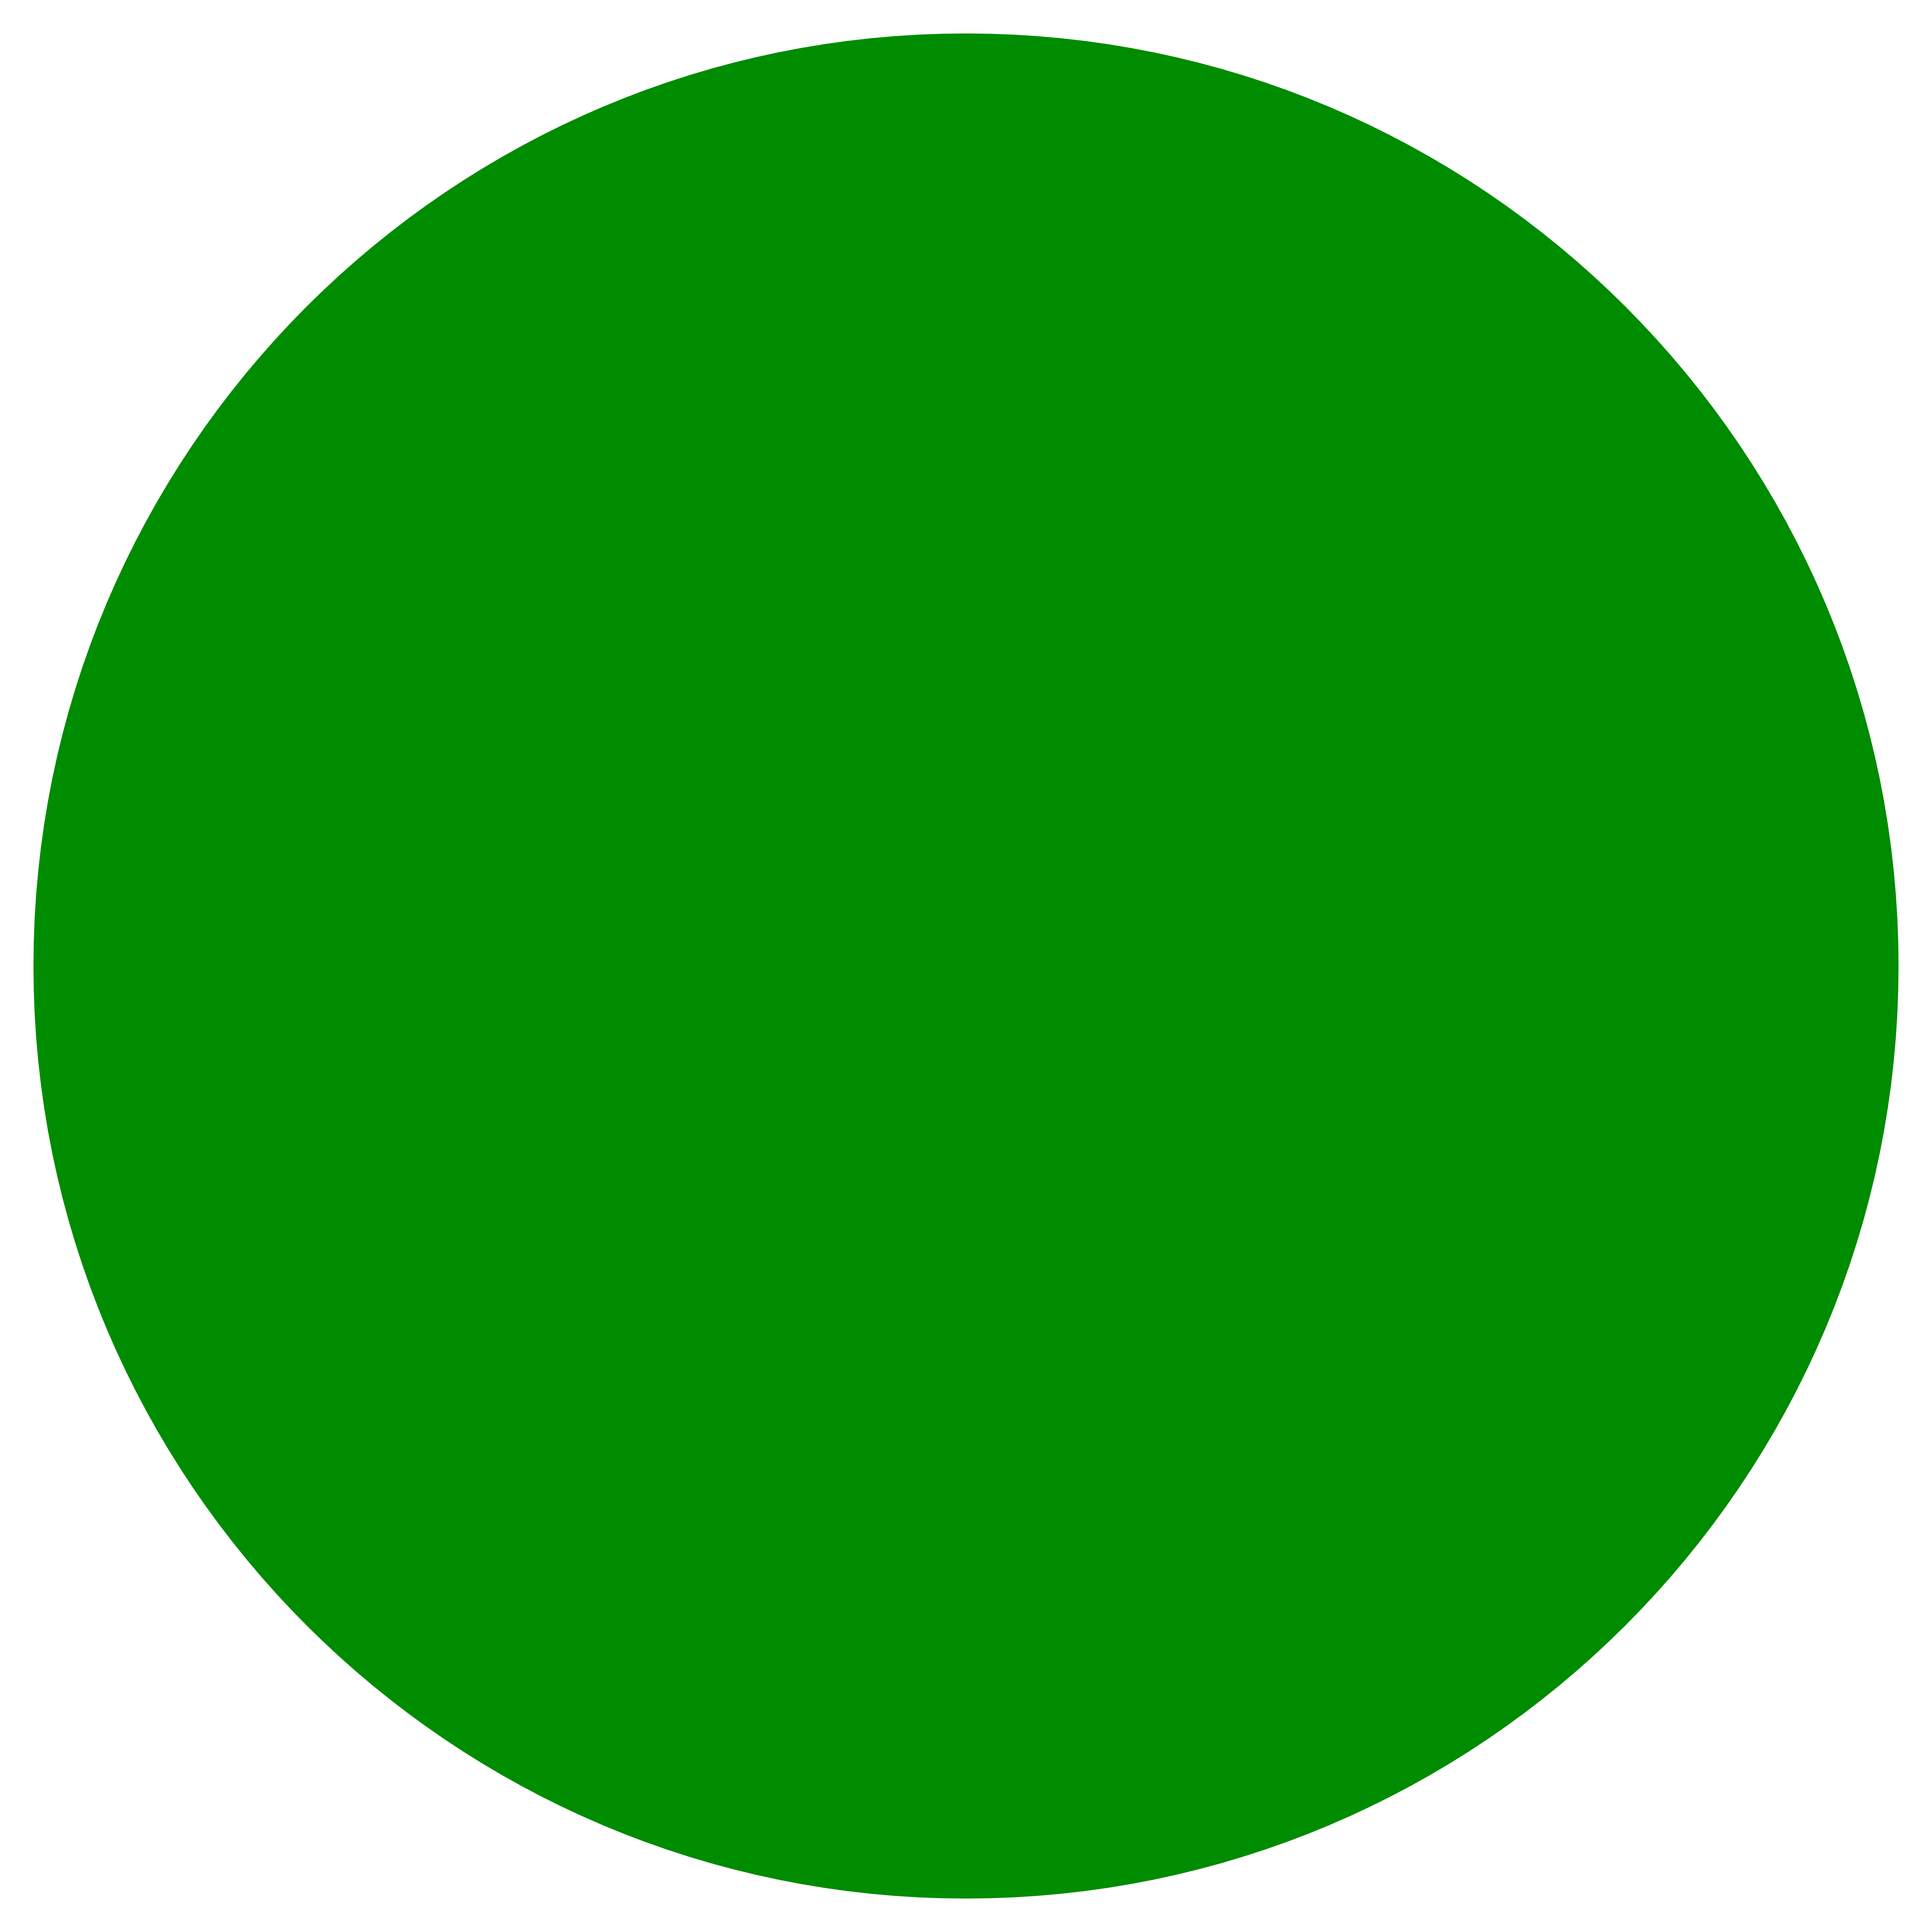 Круги разного цвета. Круг зеленого цвета. Кружочки разного цвета. Круги разного цвета для детей. Геометрическая форма круг